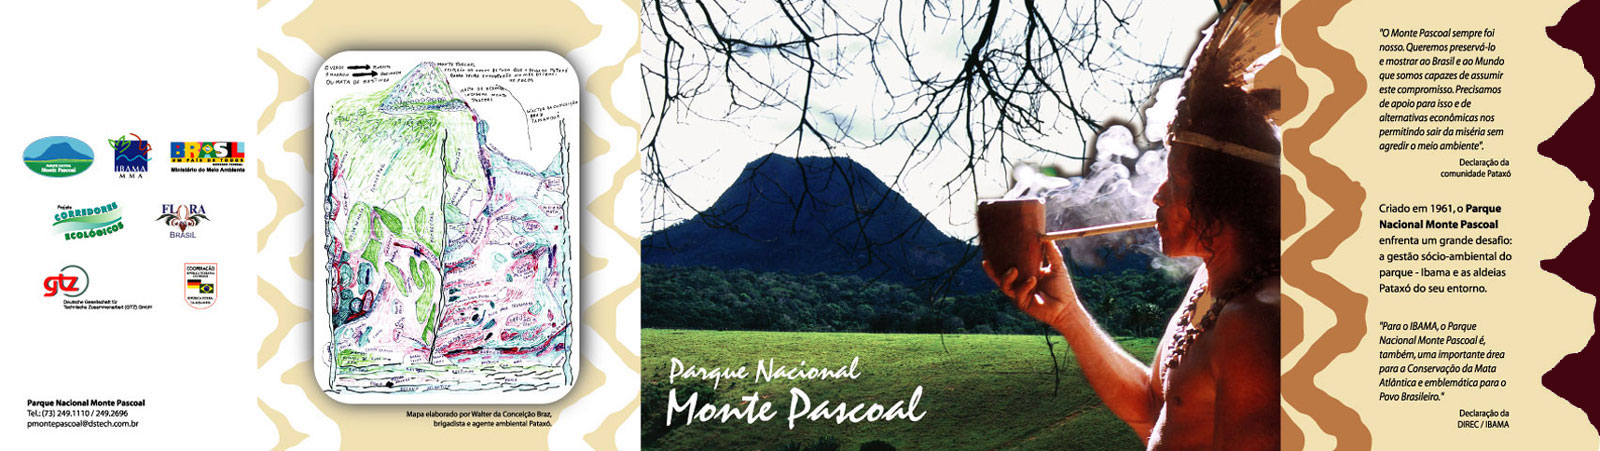 Brochure du 'Parc National du Mont Pascoal': Projet de graphisme de Nêio Mustafa. Le côté ouvert de la brochure présente une carte du parc, une photo du Mont Pascoal et un représentant Pataxó, ainsi que des témoignages de la communauté Pataxó et de l'IBAMA.